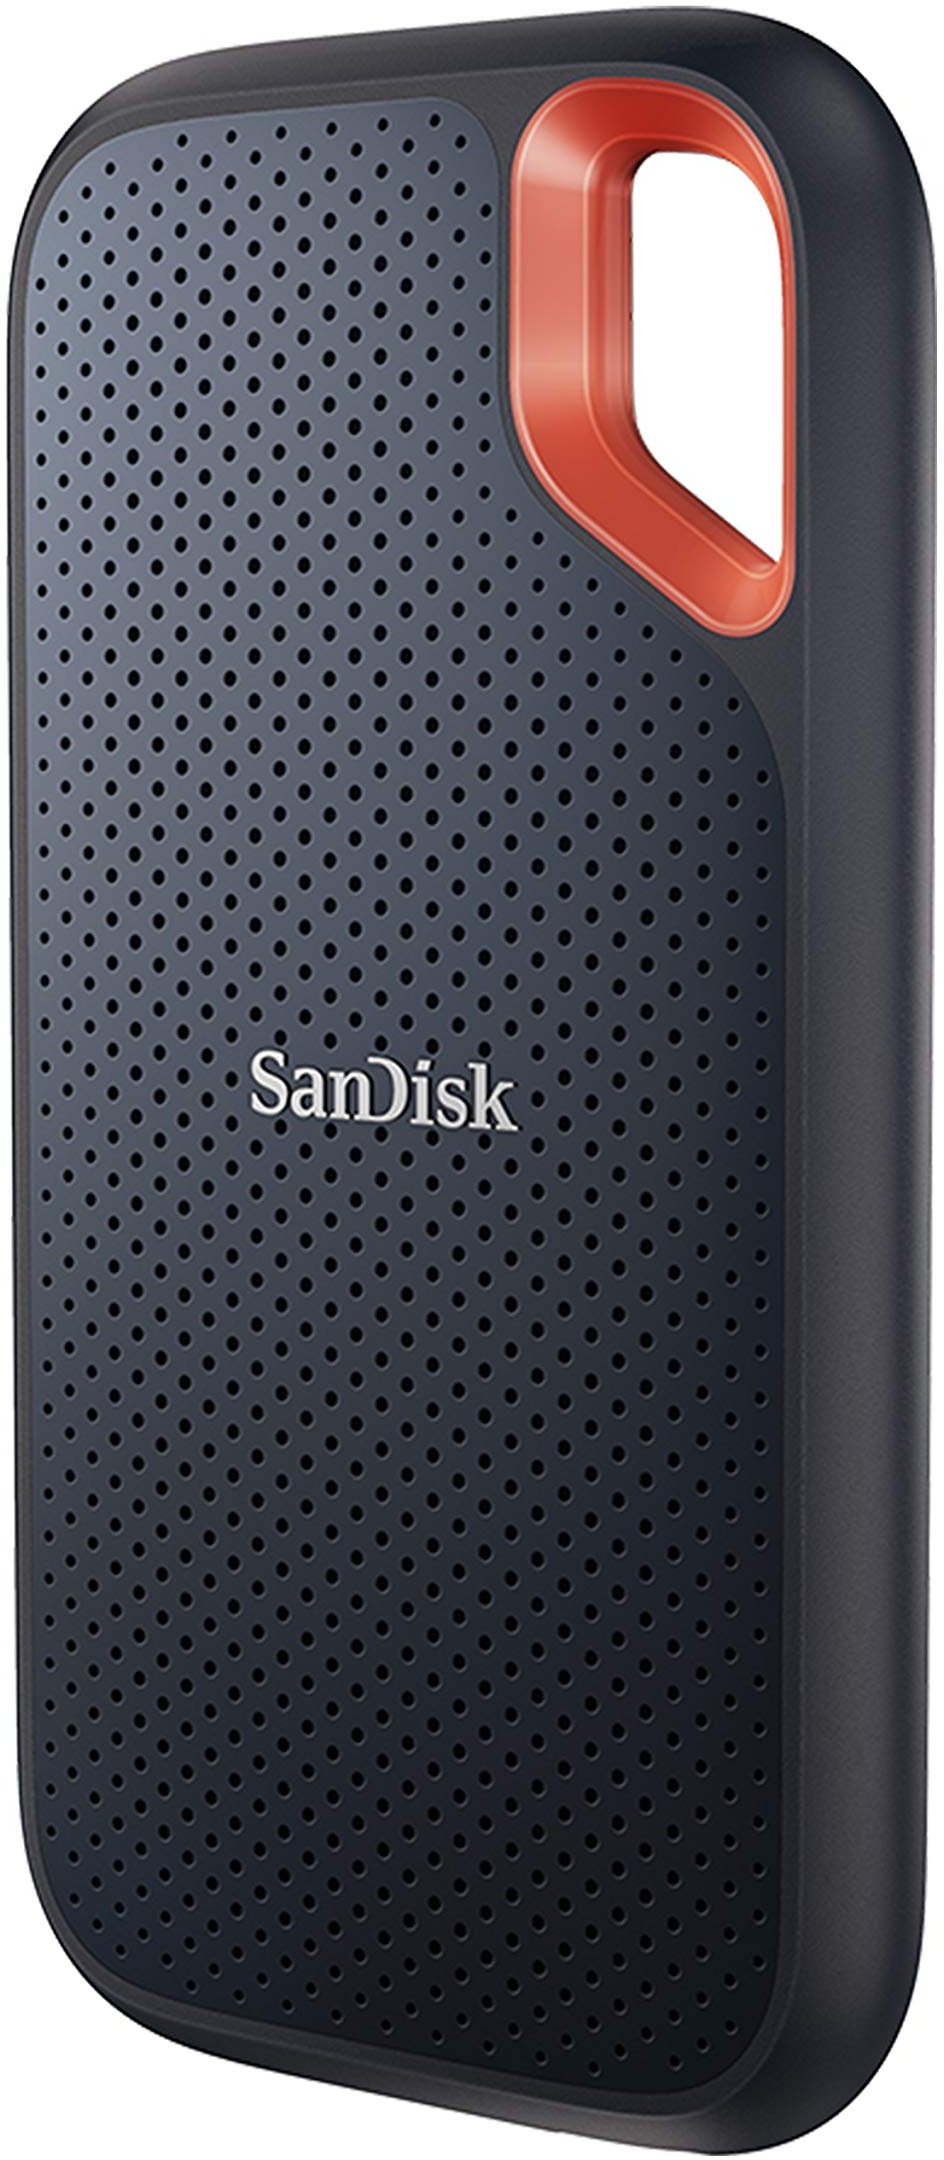 SanDisk Extreme Portable SSD 2 TB (tragbare NVMe SSD, USB-C, bis zu 1.050 MB/s Lesegeschwindigkeit und 1.000 MB/s Schreibgeschwindigkeit, wasser- und staubbeständig) Schwarz